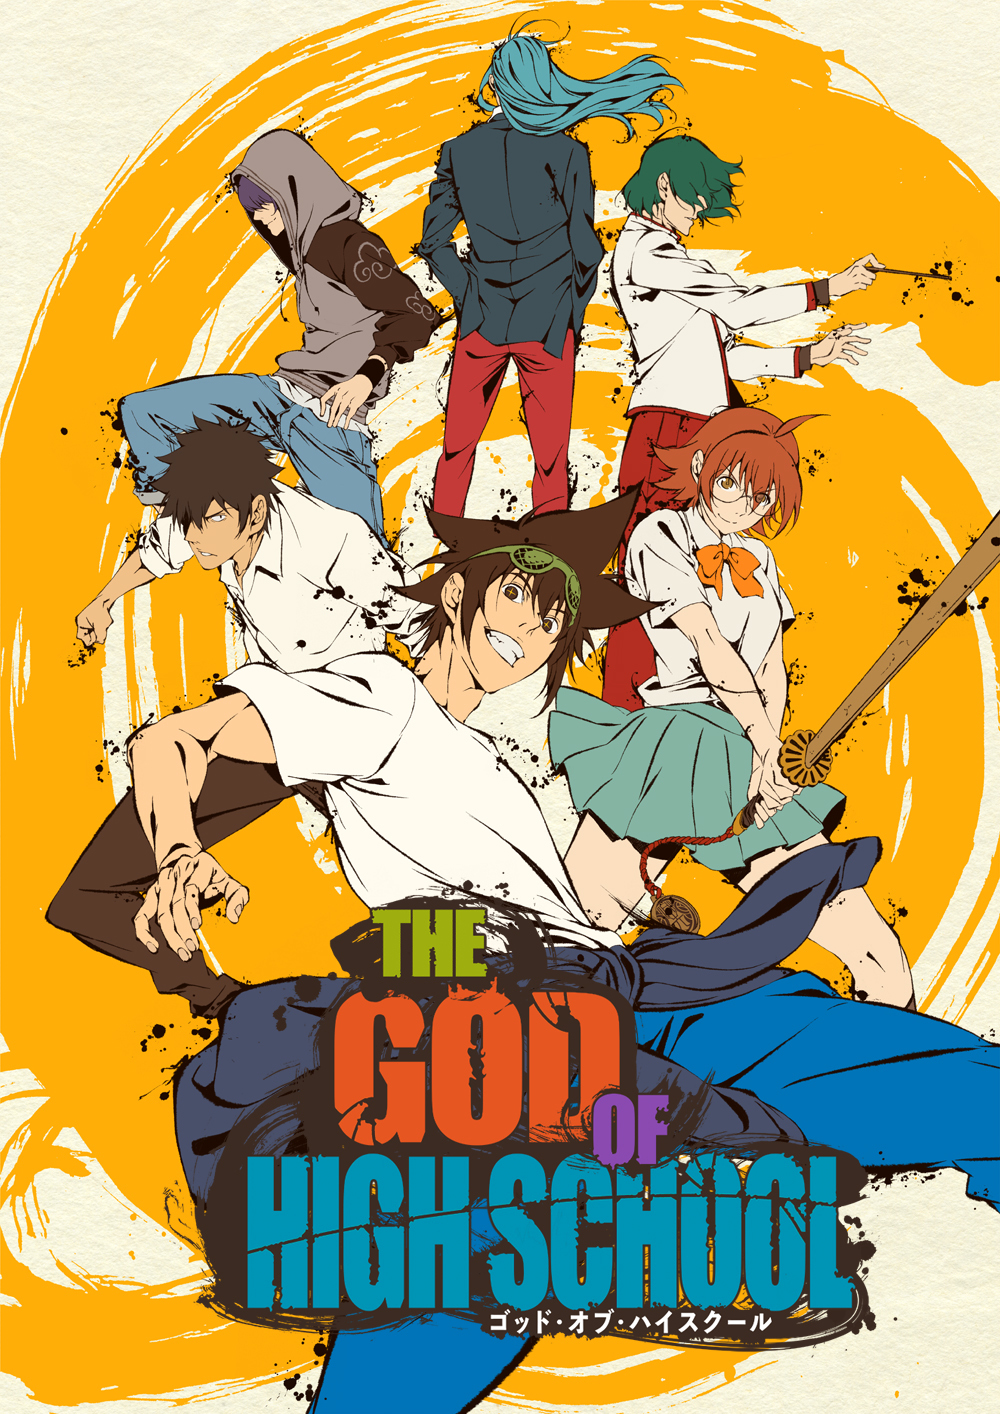 アニメ『THE GOD OF HIGH SCHOOL ゴッド・オブ・ハイスクール』キービジュアル (C) 2020 Crunchy Onigiri, LLC　Based on the comic series The God of High School created by Yongje Park and published by WEBTOON